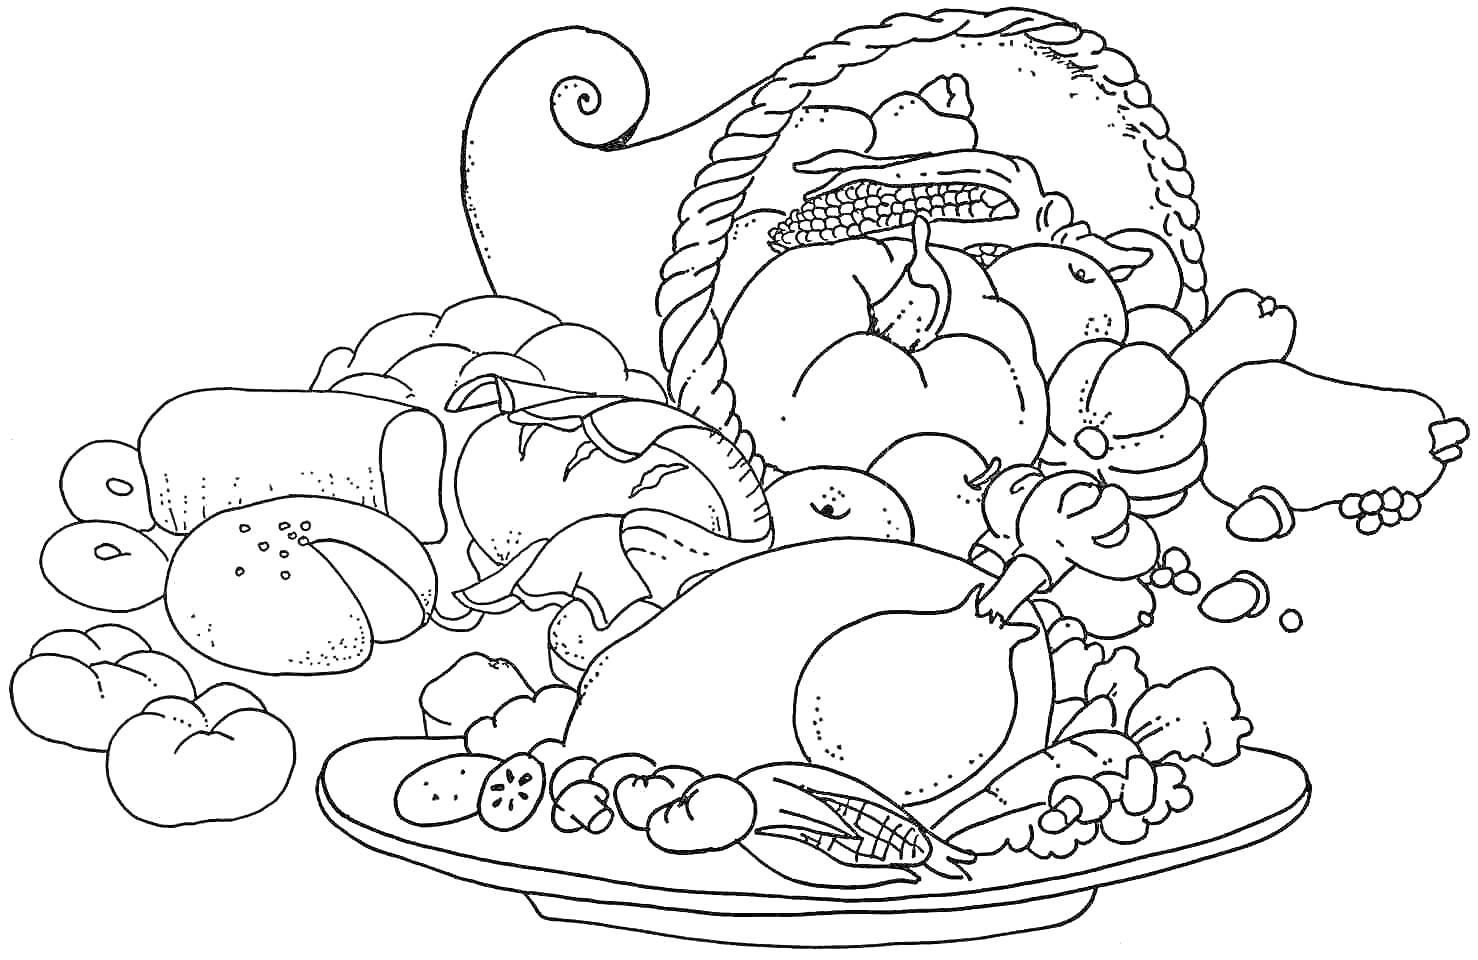 Раскраска Корзина с хлебом, яблоками и овощами, и индейка с гарниром на тарелке